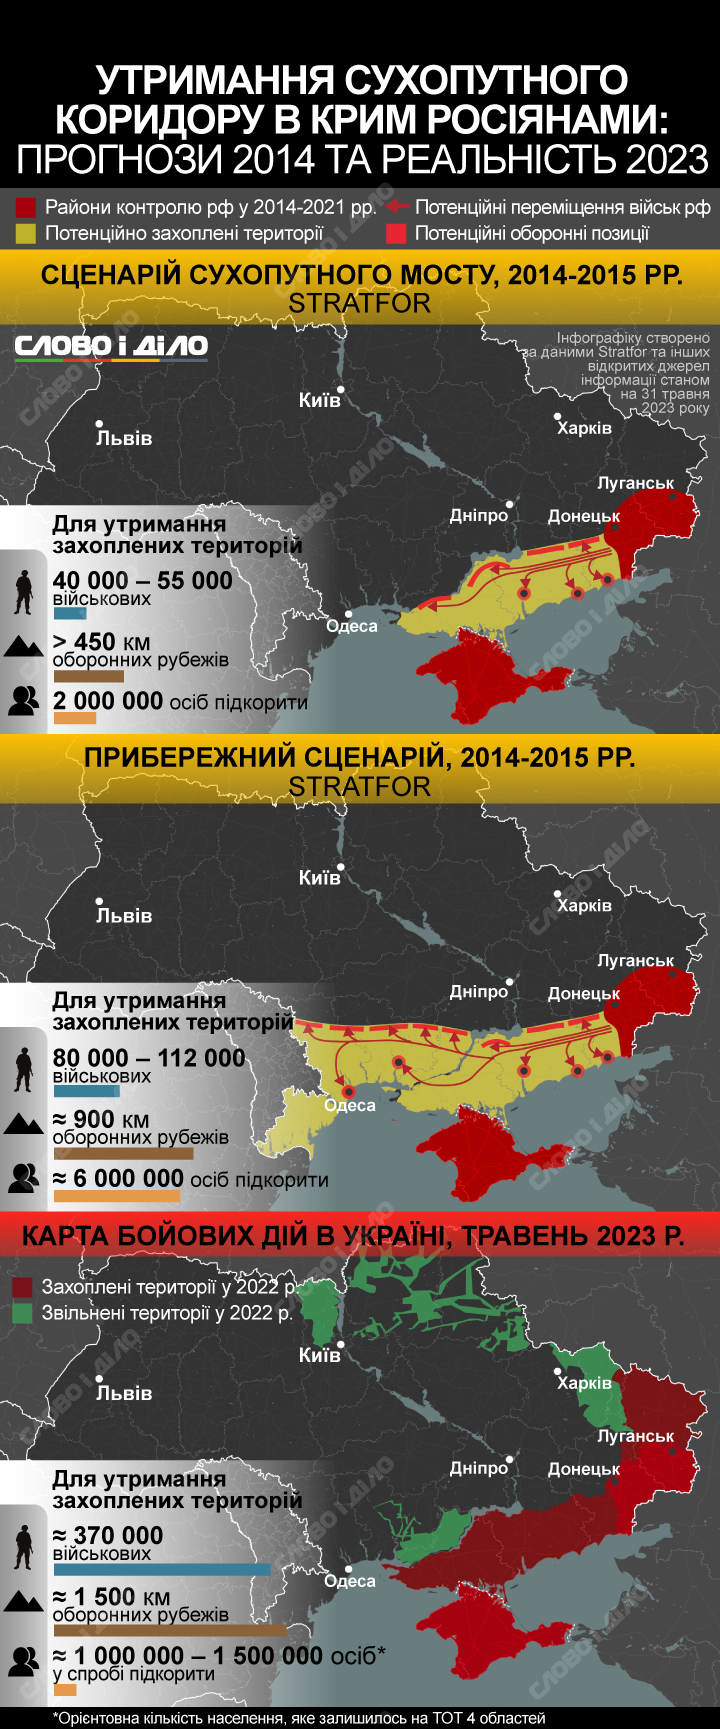 Сухопутный коридор в Крым – чего стоит россии удержание оккупированных территорий и что прогнозировали аналитики.